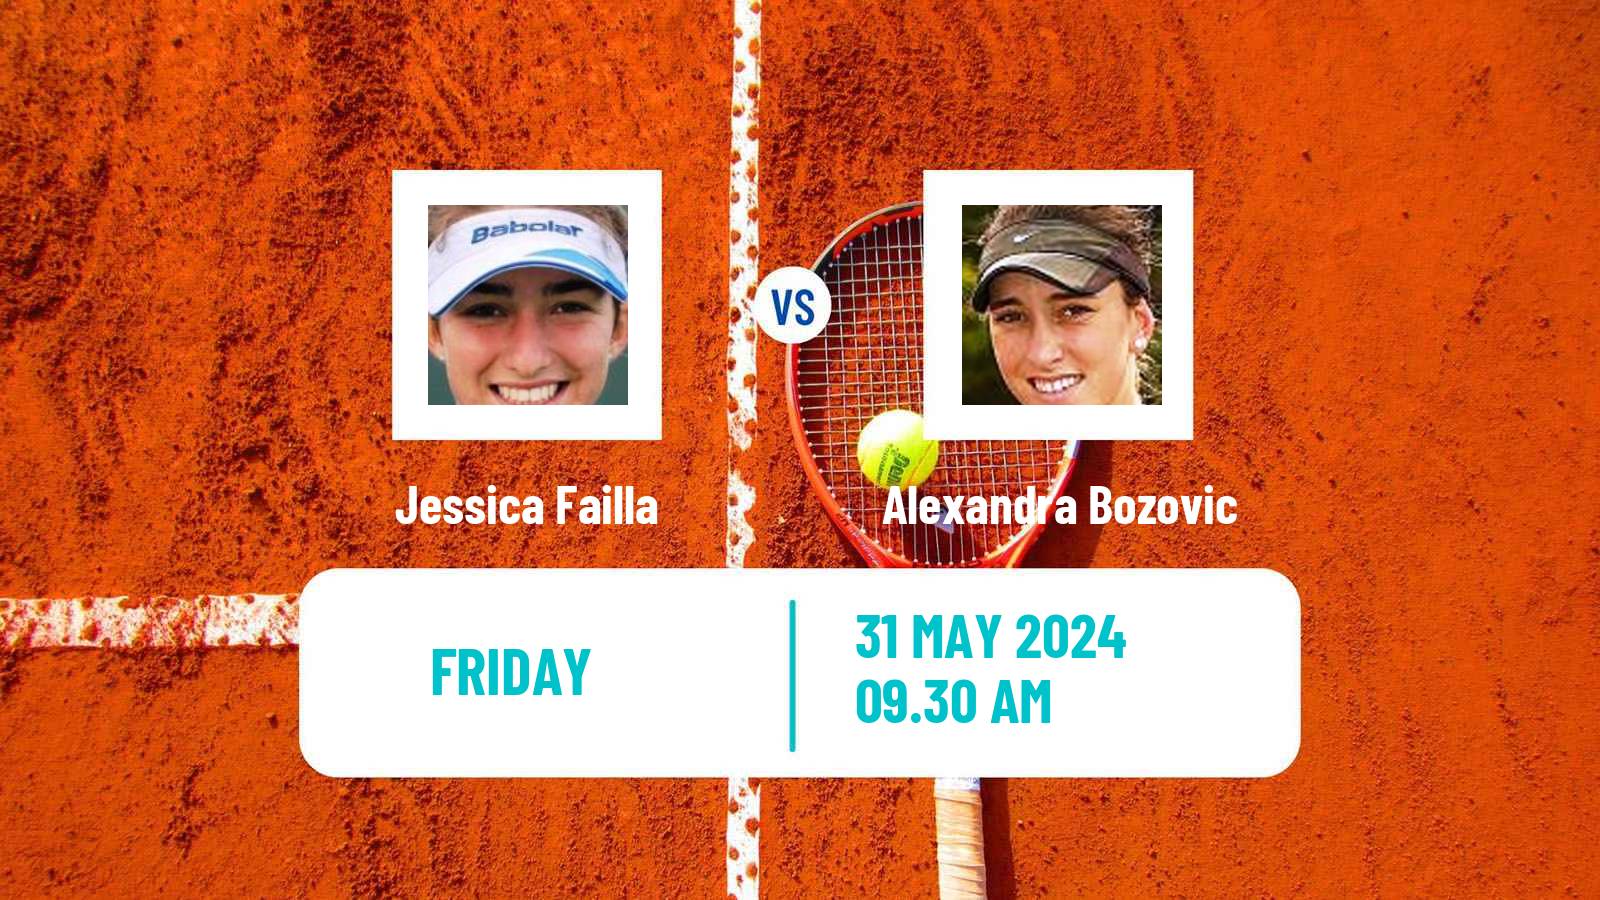 Tennis ITF W35 Santo Domingo 4 Women Jessica Failla - Alexandra Bozovic